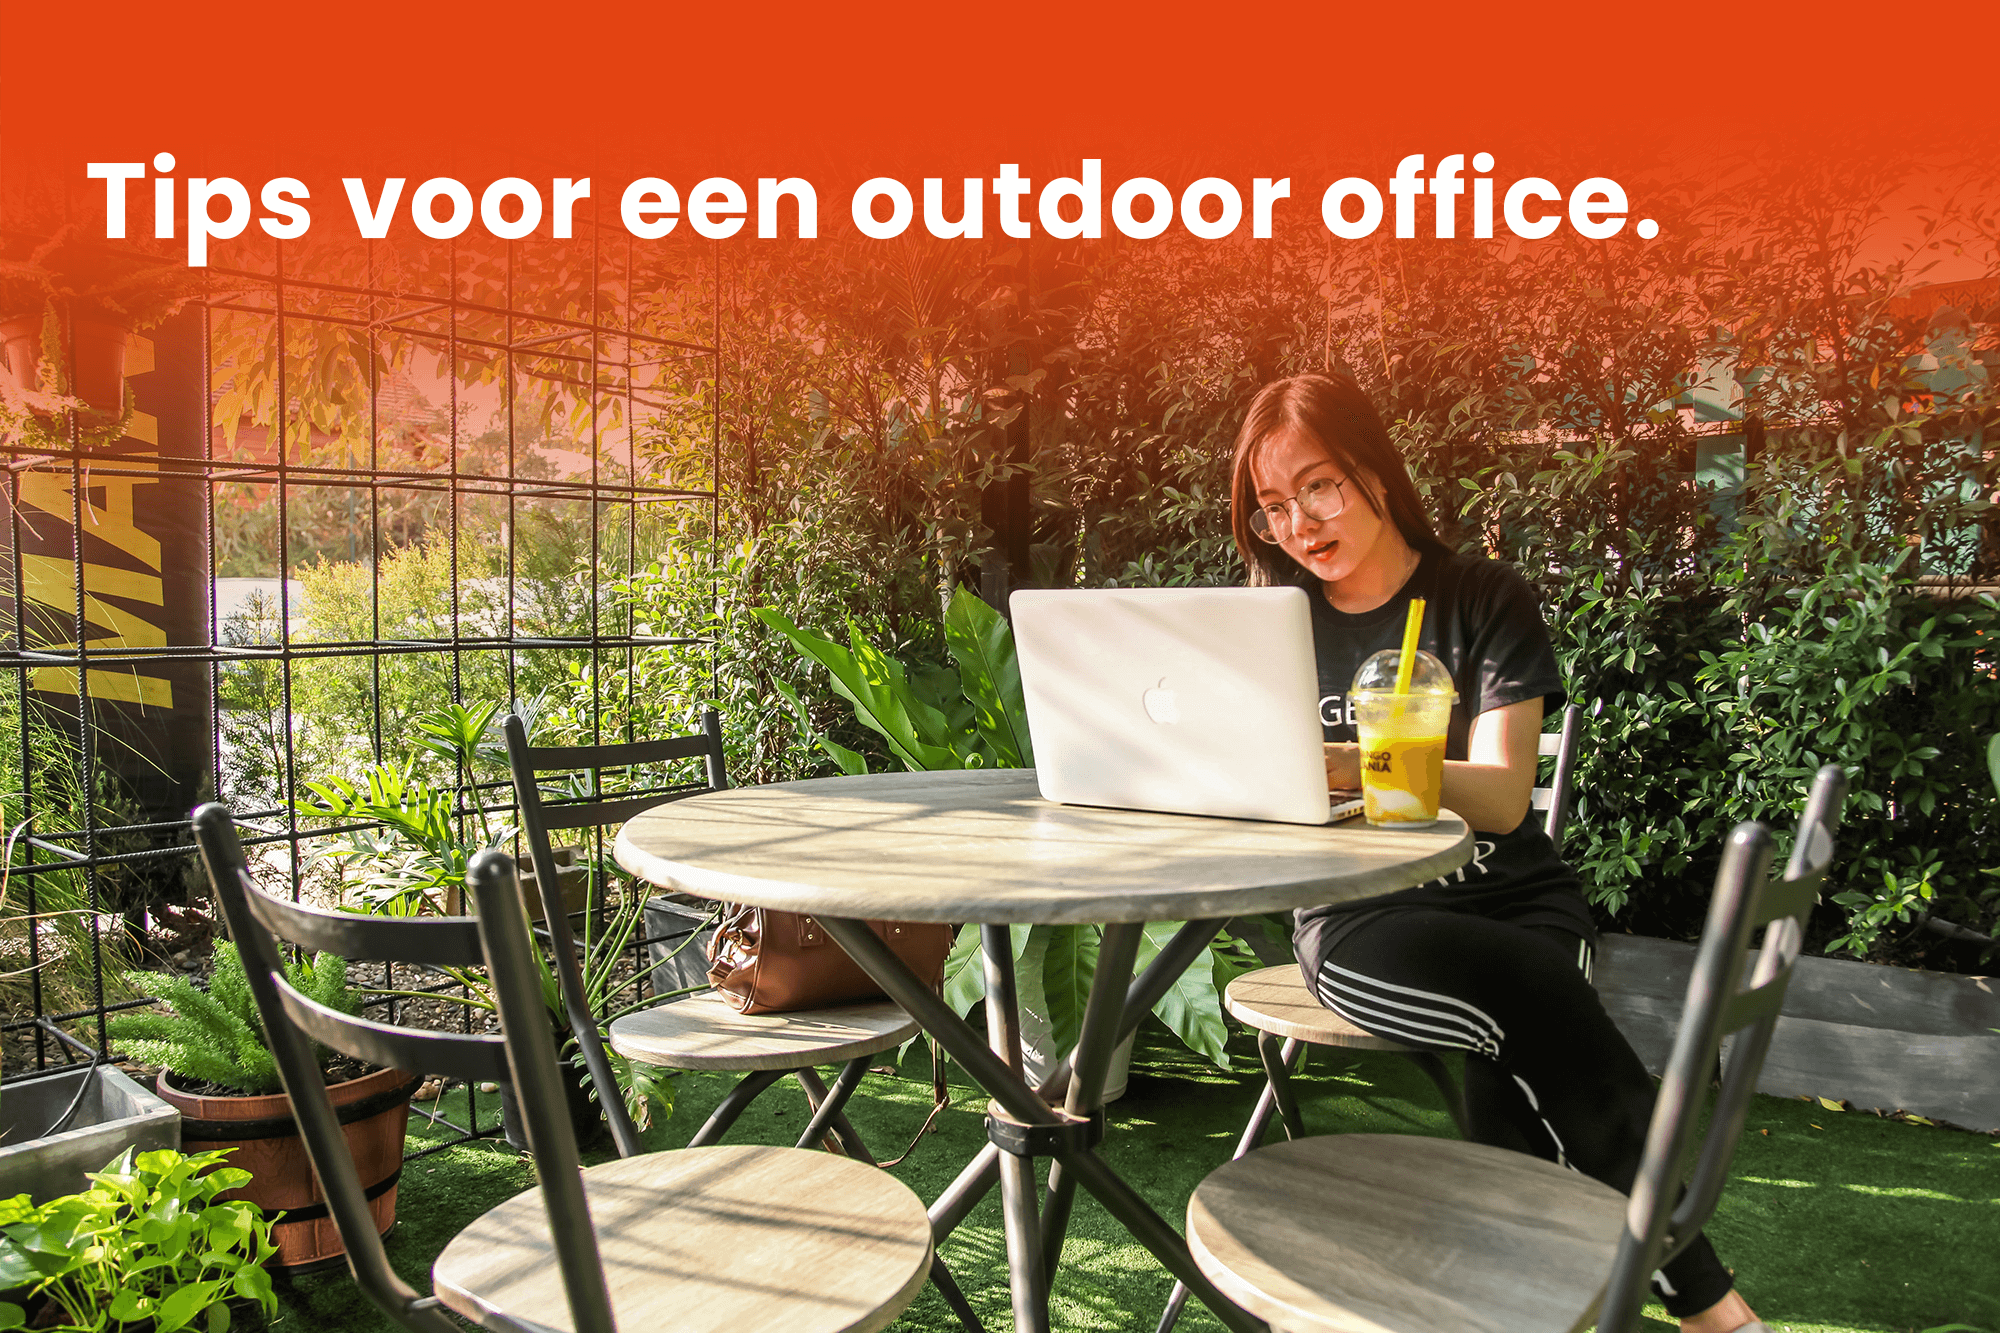 Tips voor een outdoor office